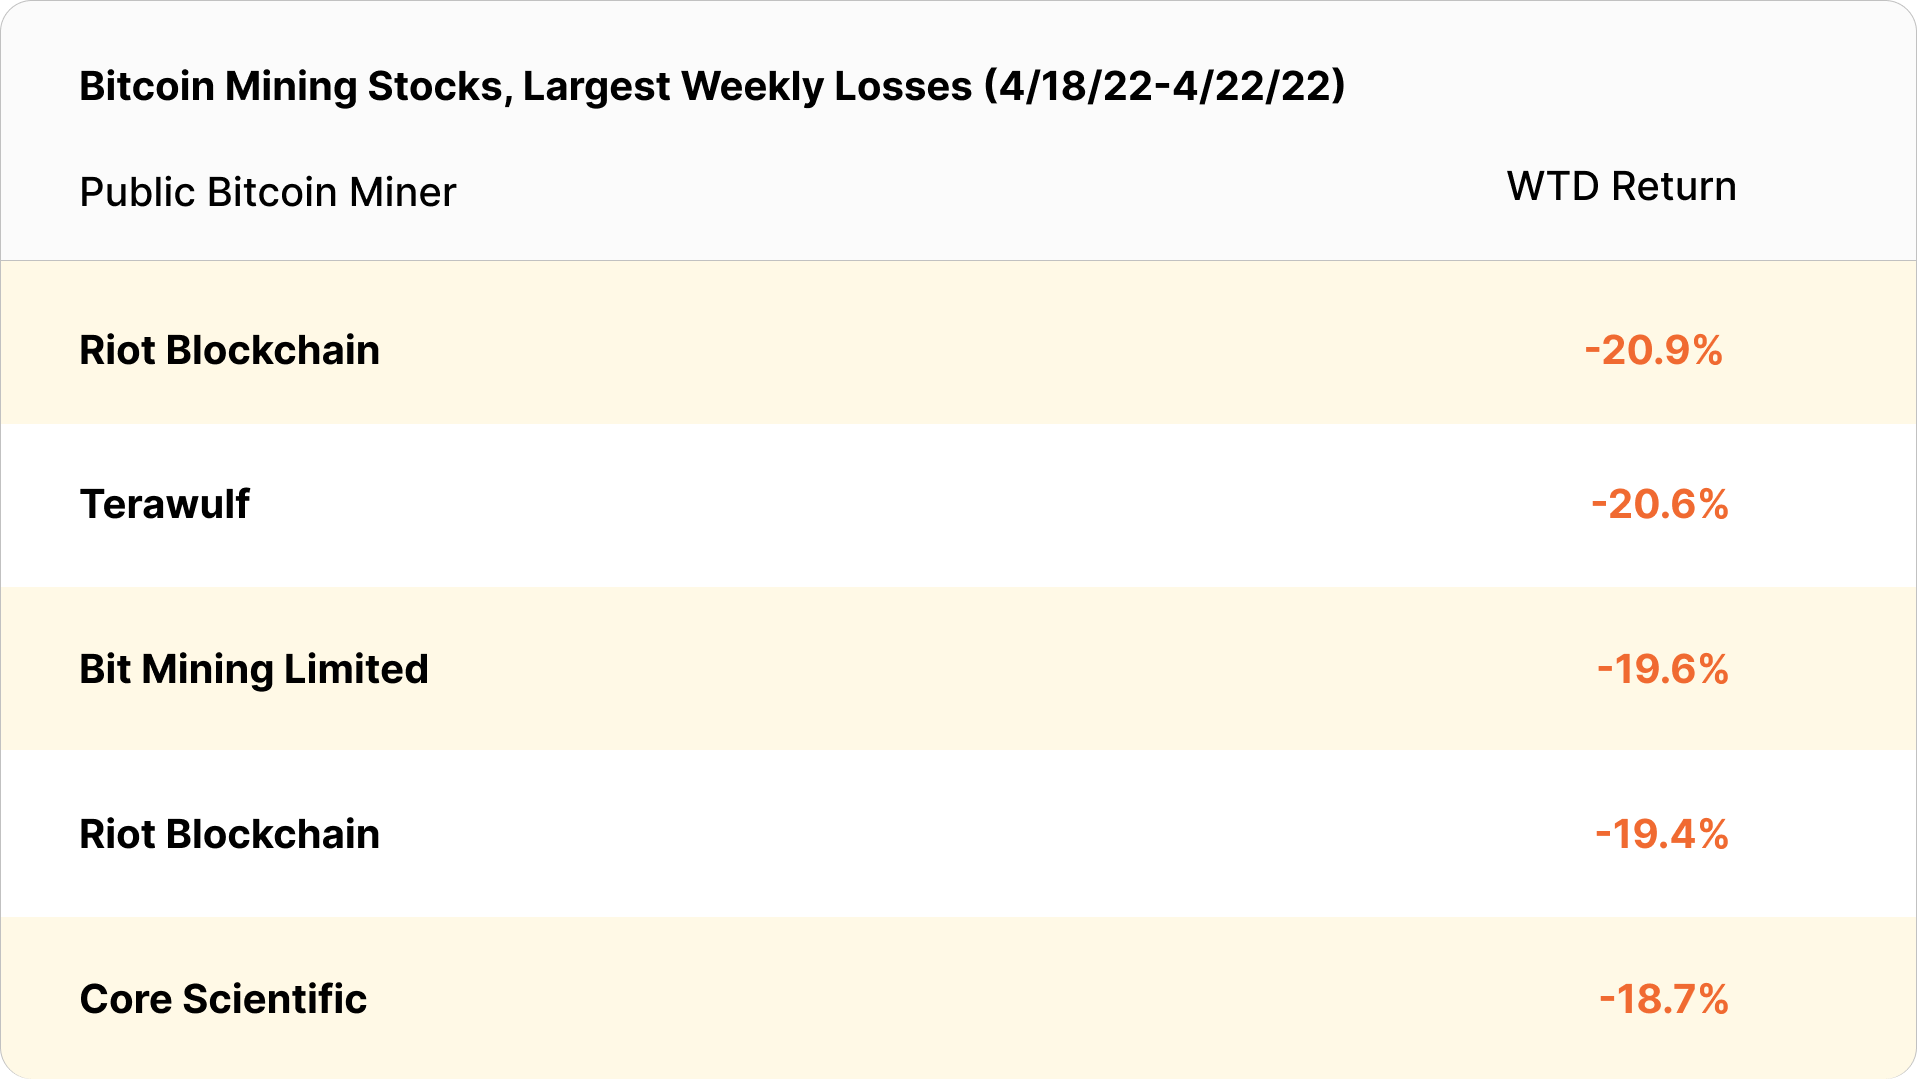 bitcoin mining stocks weekly losses (April 18 - April 22, 2022)